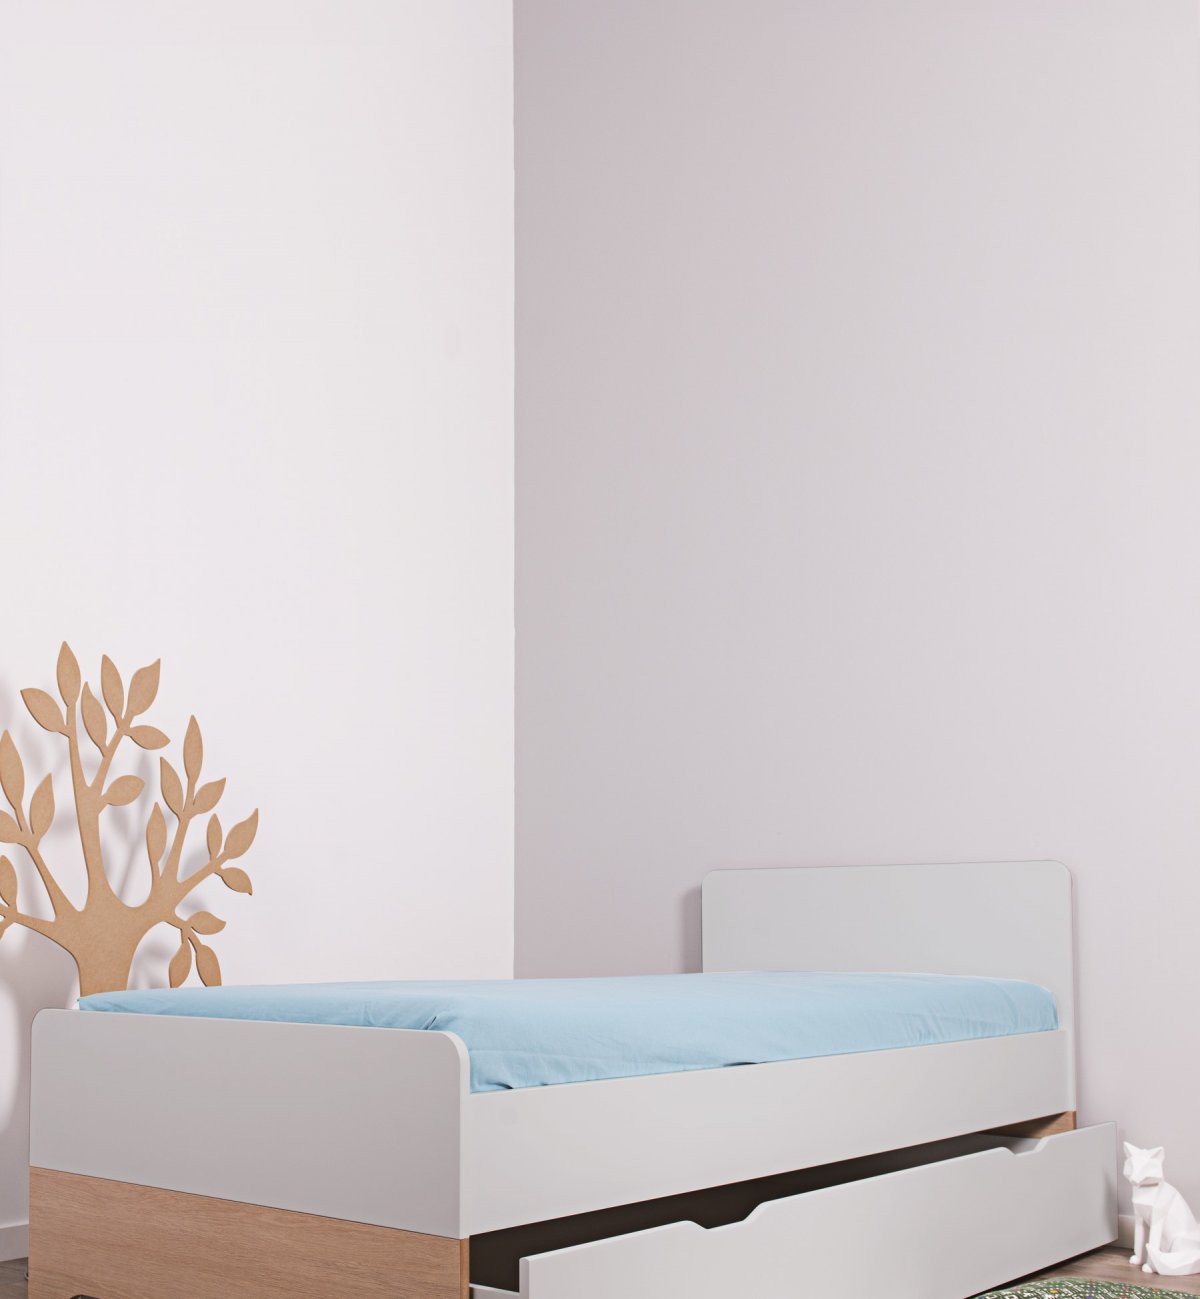 Letto 90x200cm grigio chiaro / legno + cassetto del letto Calvi - Kadolis